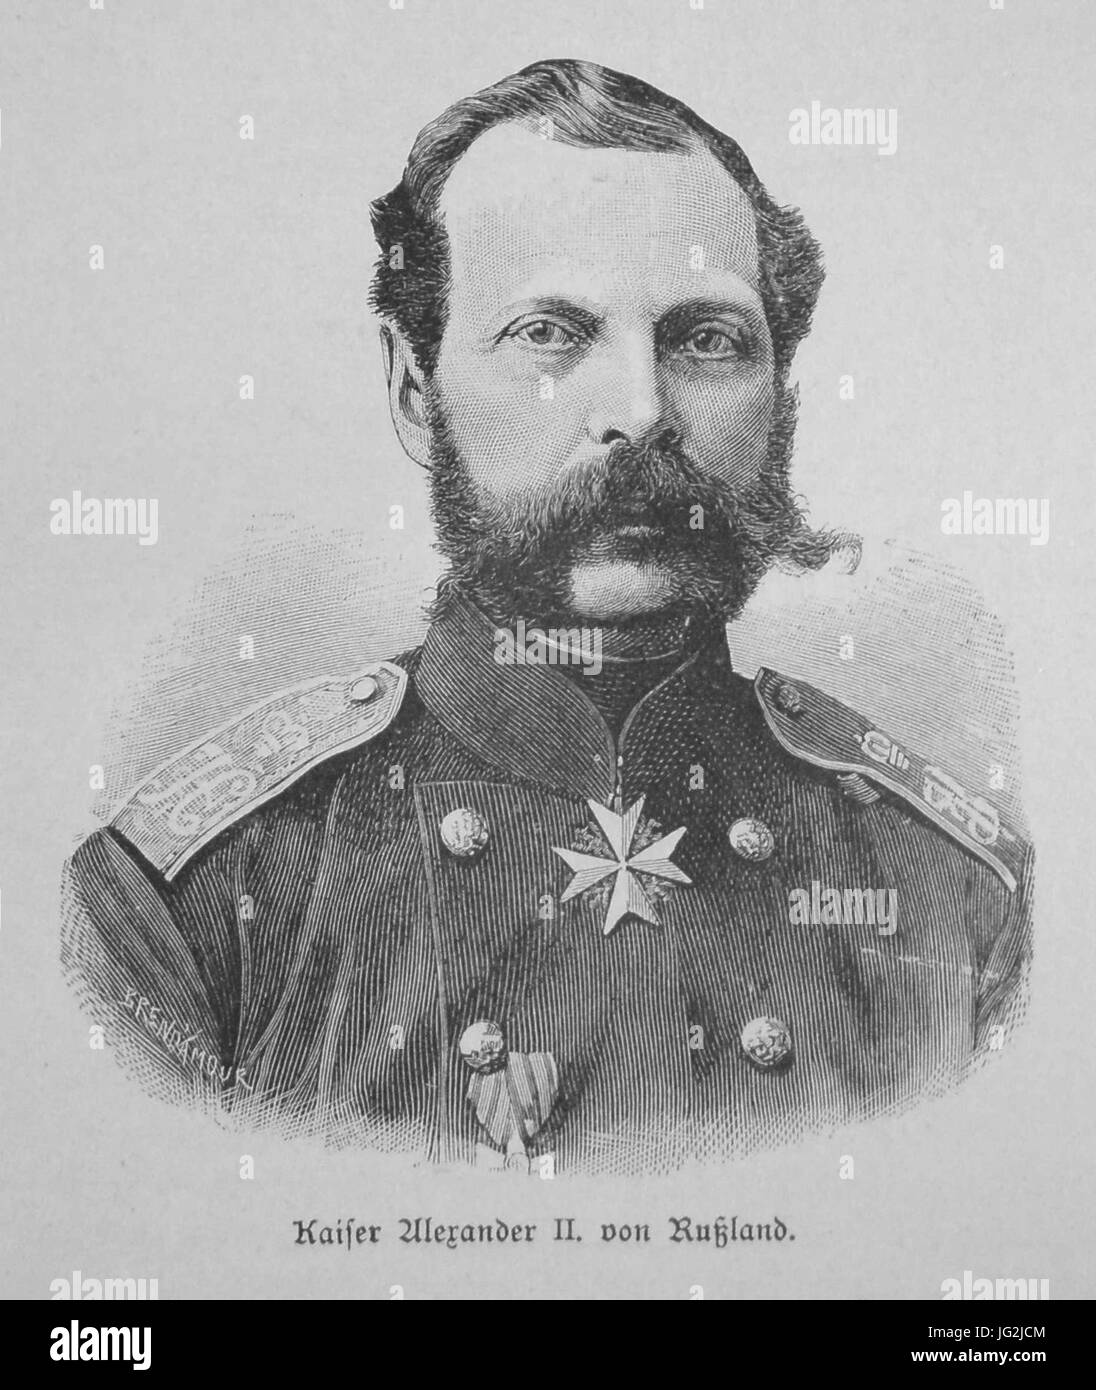 Kaiser Alexander II. von Rußland Foto Stock